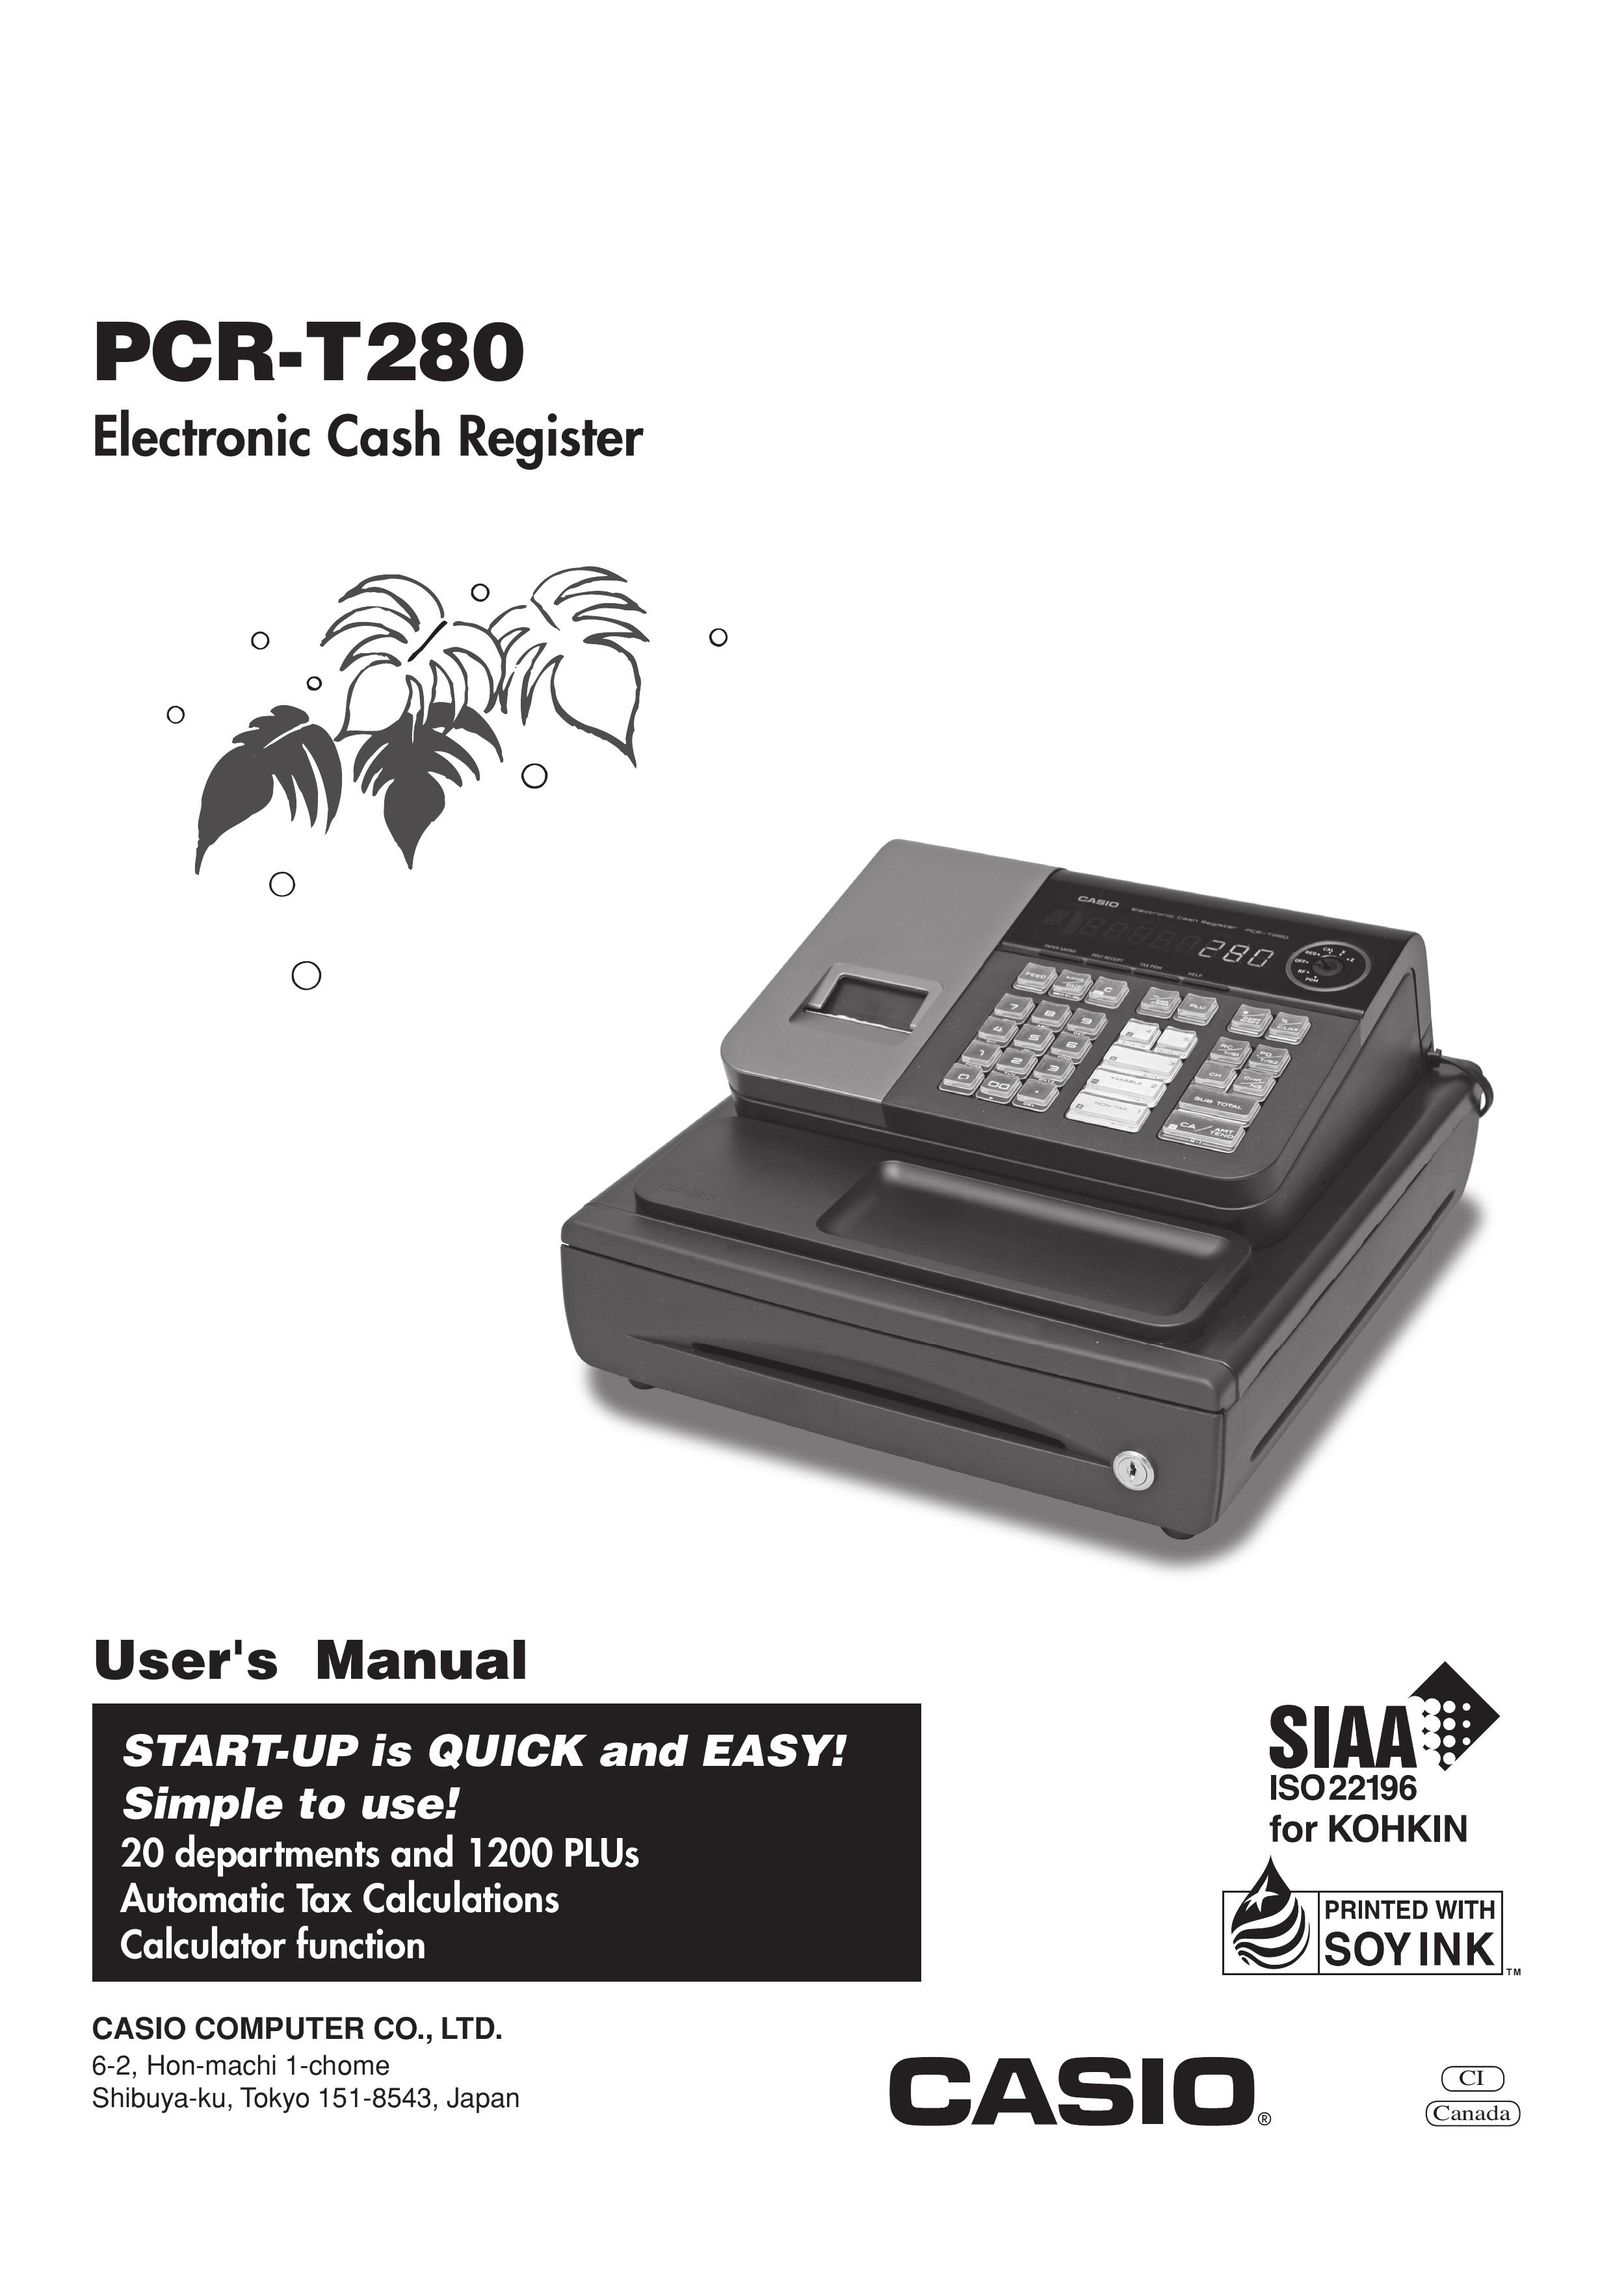 Casio PCRT280 Cash Register User Manual